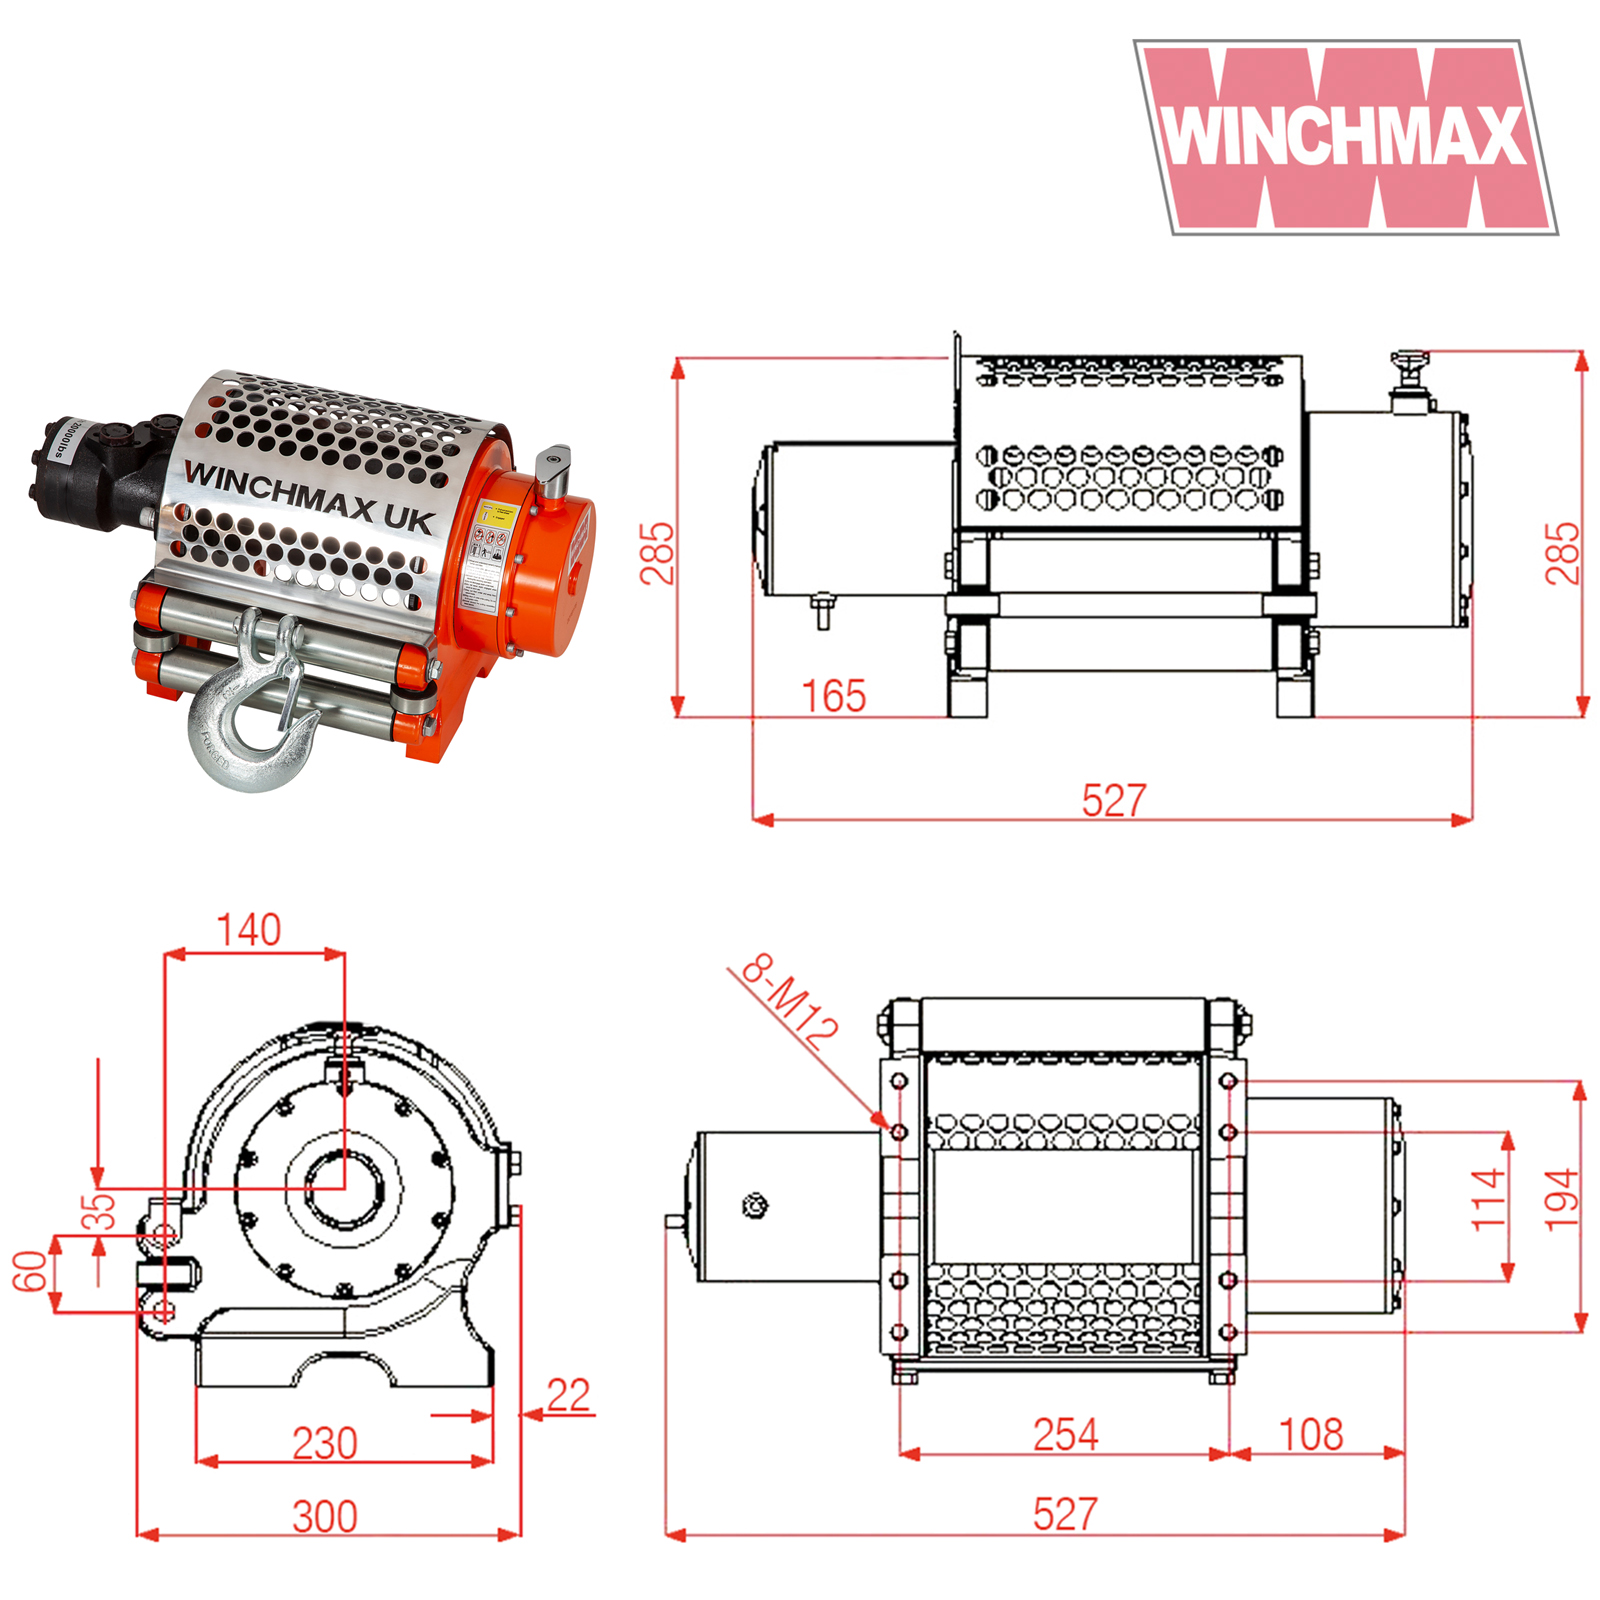 Winchmax 20000lb Hydraulic Winch Technical Spec